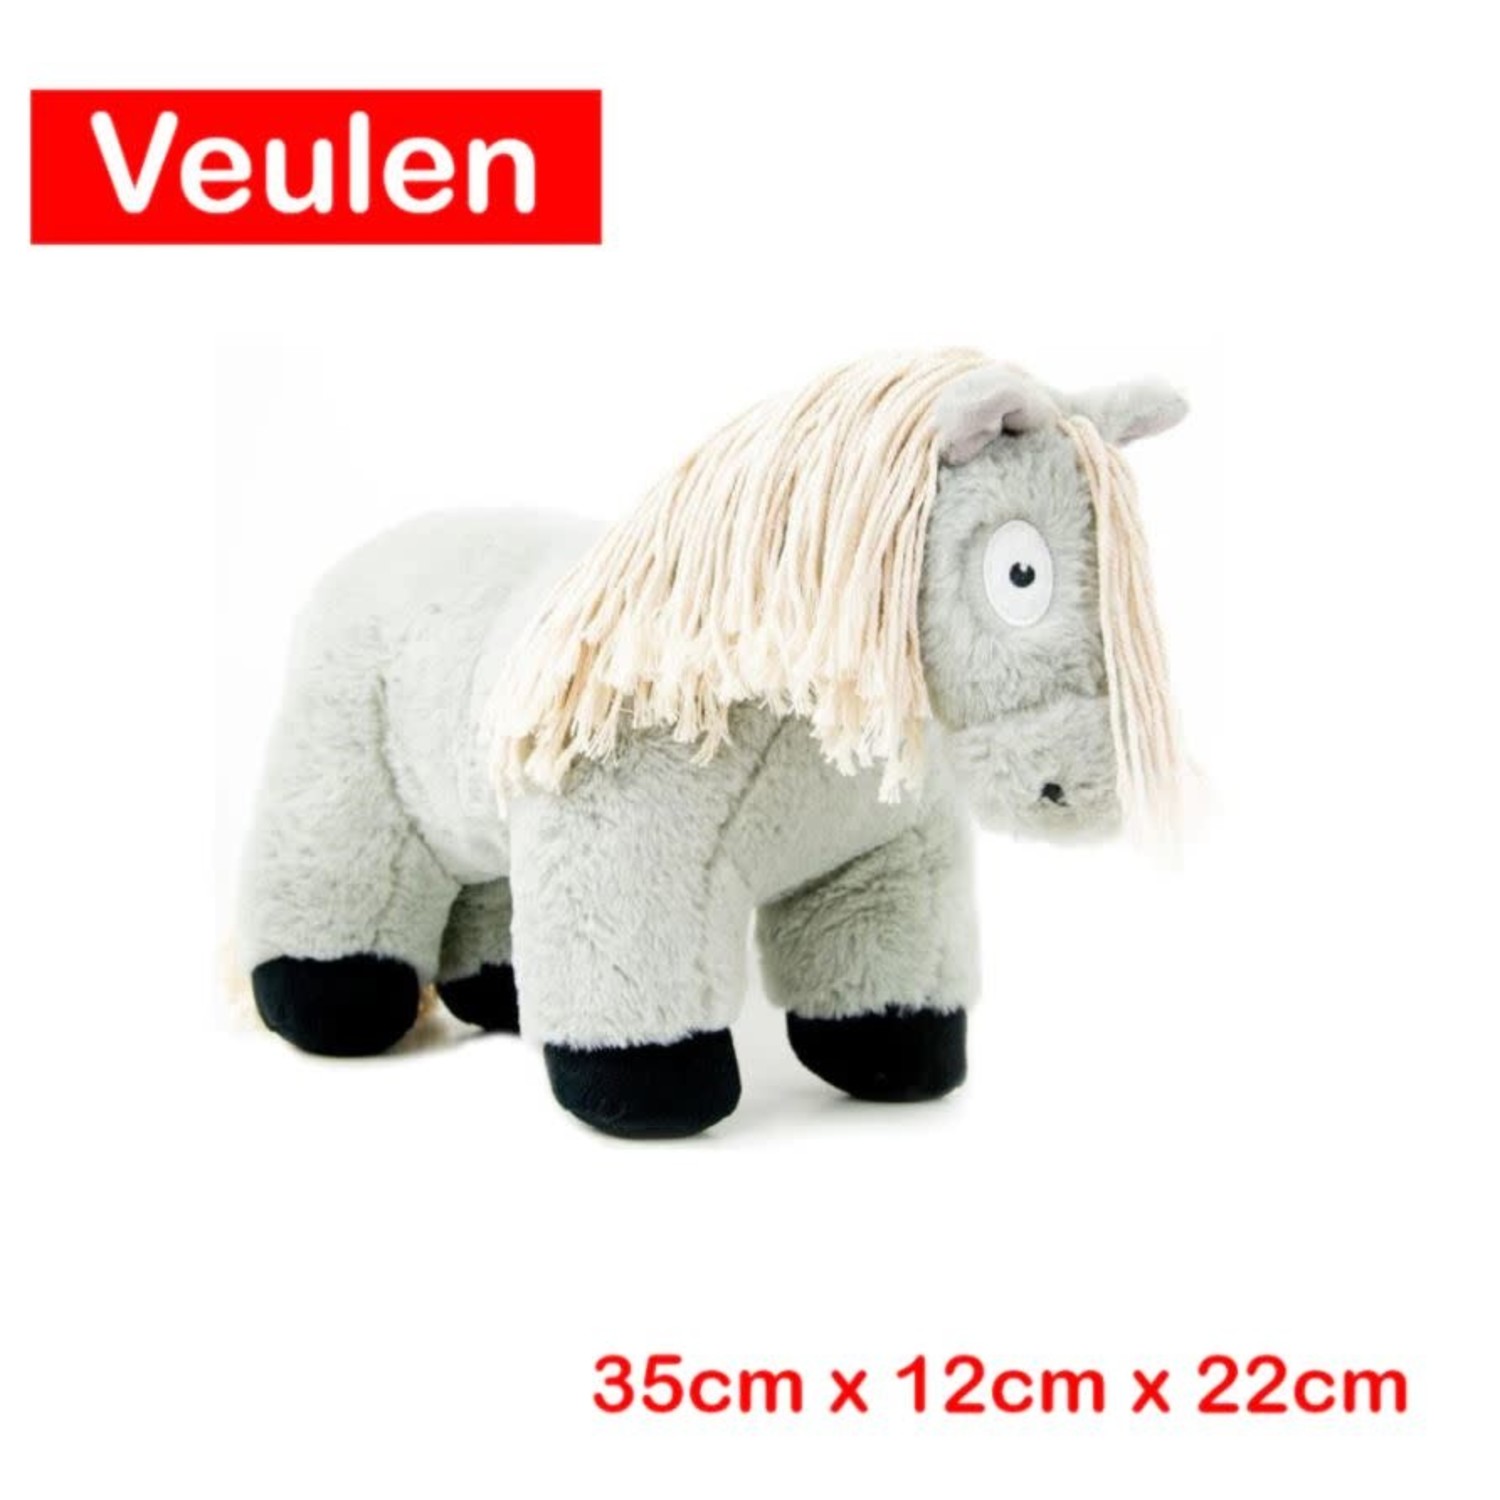 Kinderdag kroeg Ontwaken Paardenknuffel Crafty Pony Veulen (35cm) Grijs incl. boekje - Aleashop